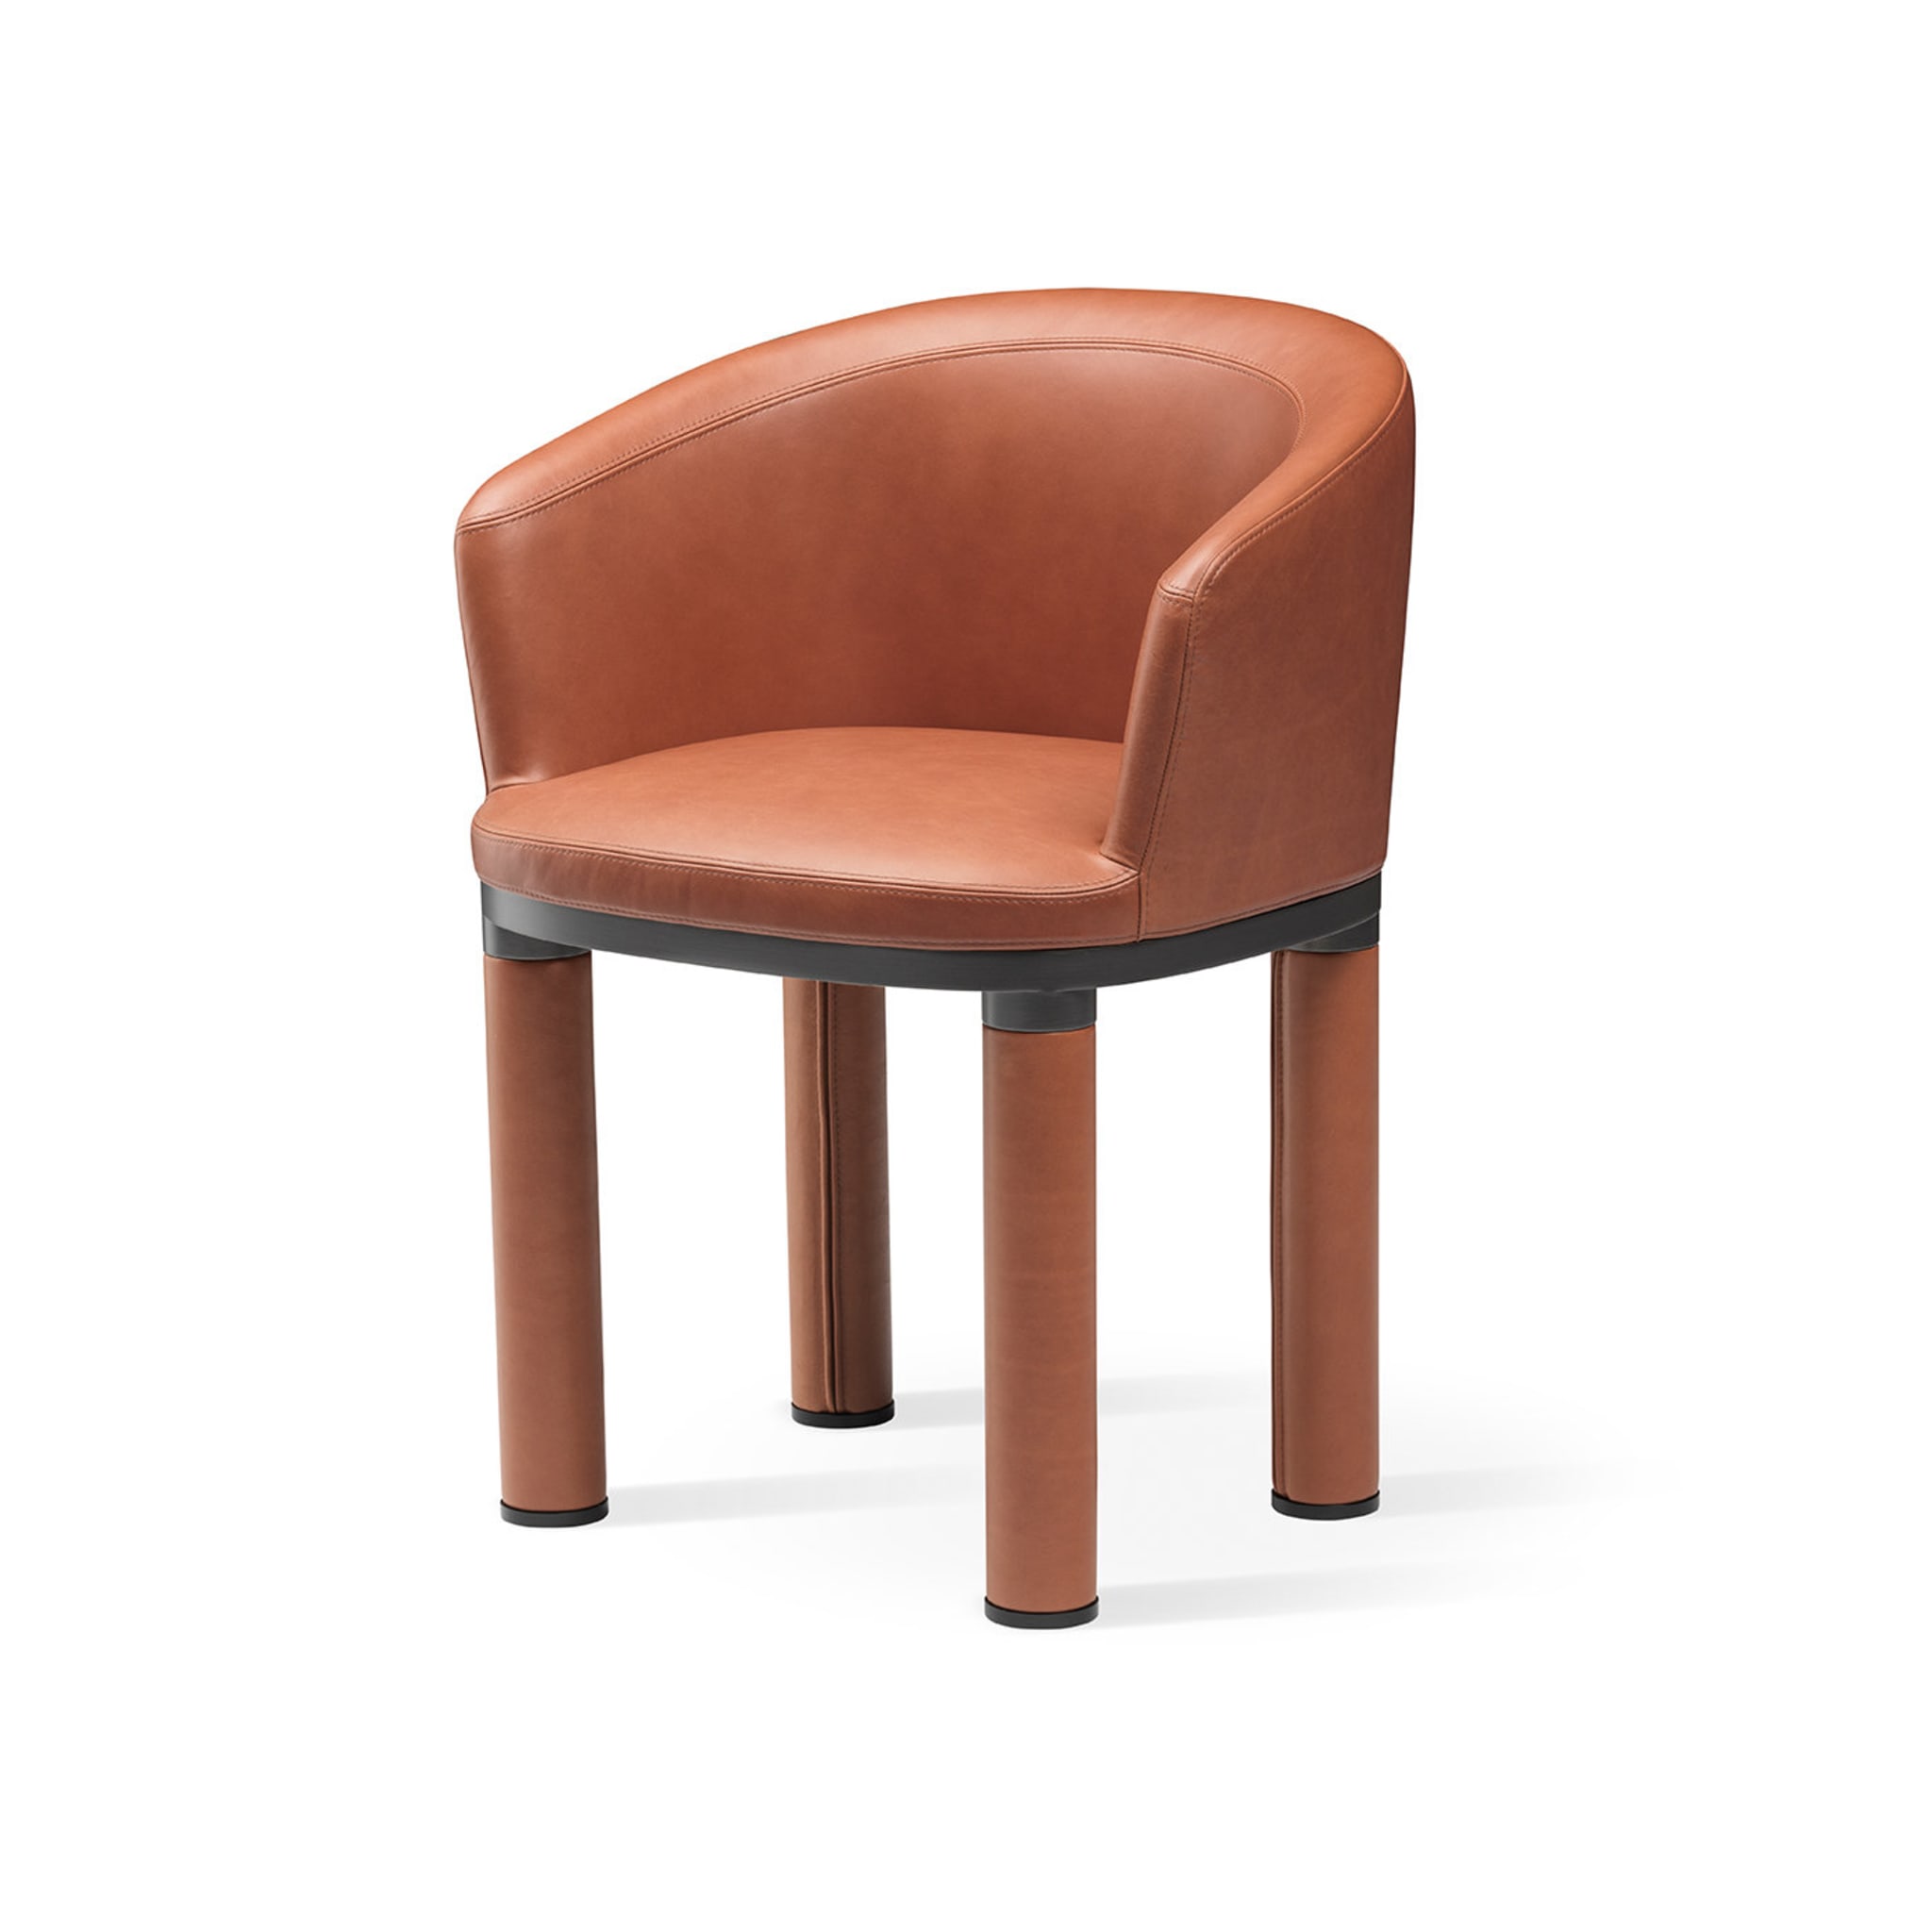 Bold Orange Chair - Alternative view 1